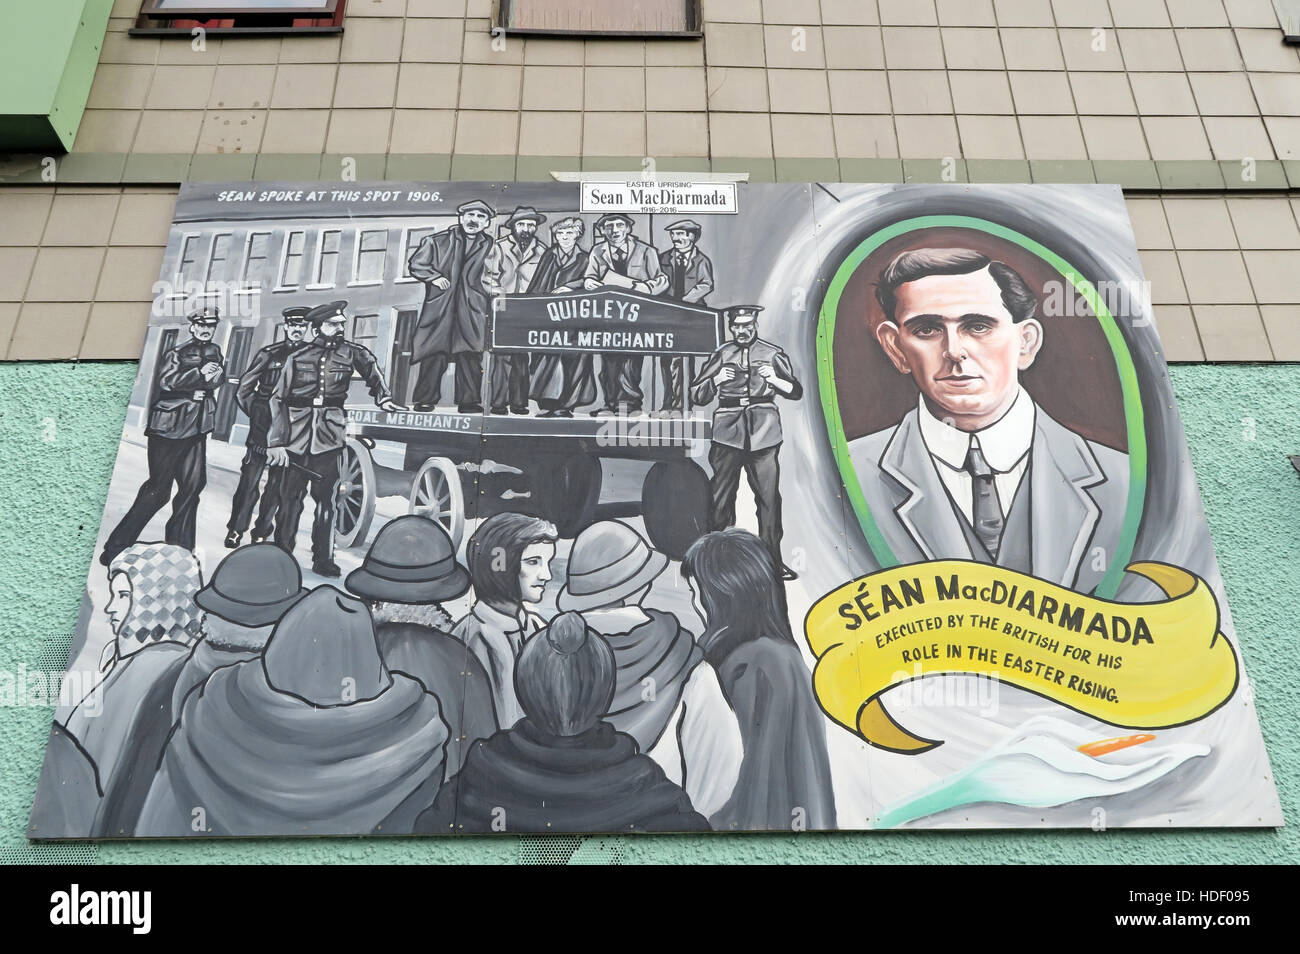 Belfast cade Rd murale repubblicano- Sean MacDiarmada eseguito dagli inglesi per la Pasqua in aumento Foto Stock